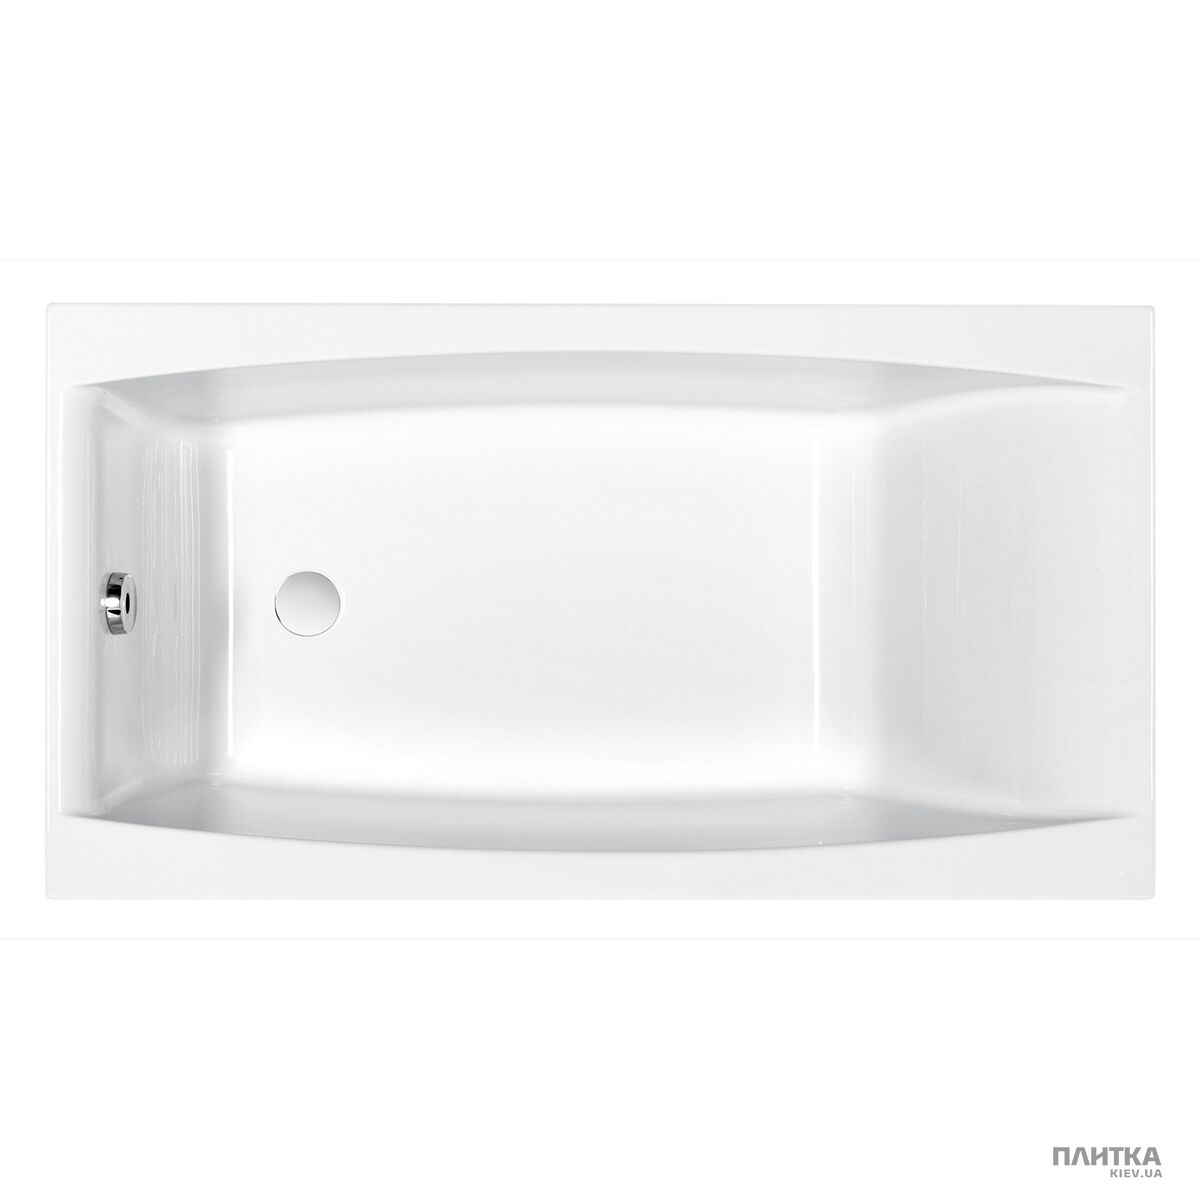 Акриловая ванна Cersanit Virgo S301-047 VIRGO Ванна 140x75+PW04 белый